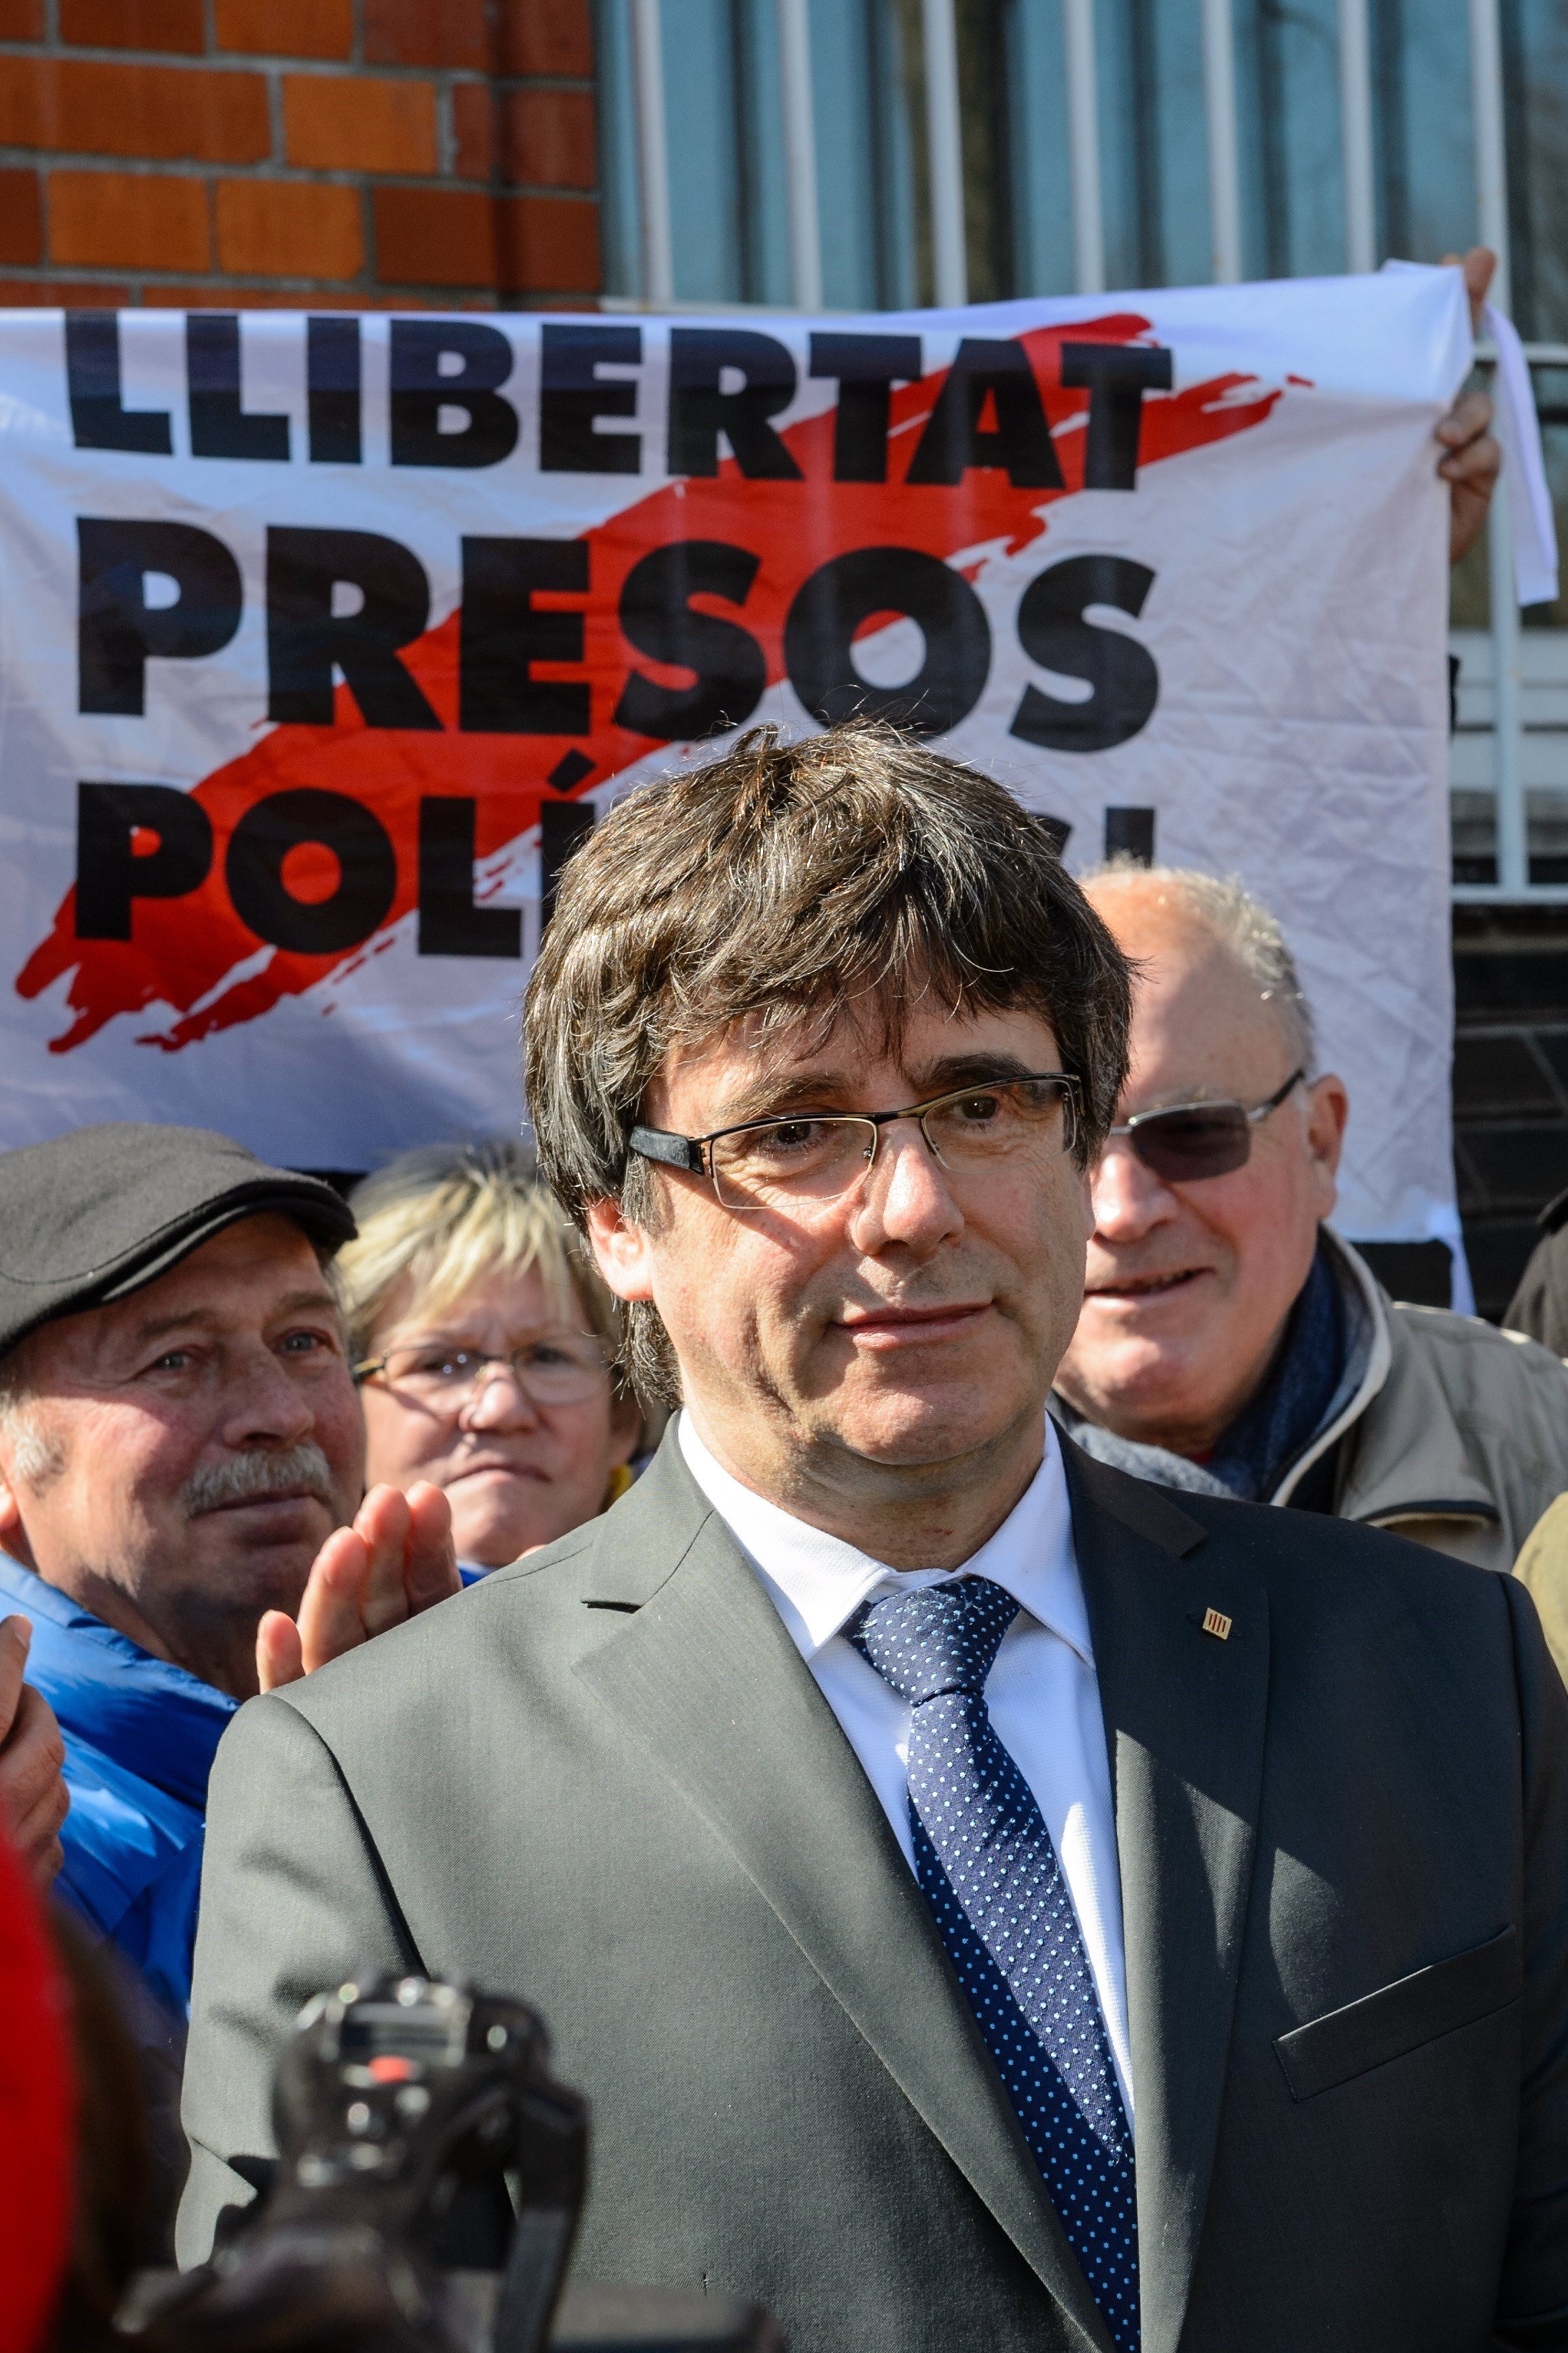 El mensaje de ánimos de Puigdemont tras salir de la prisión: "Seguiremos adelante"